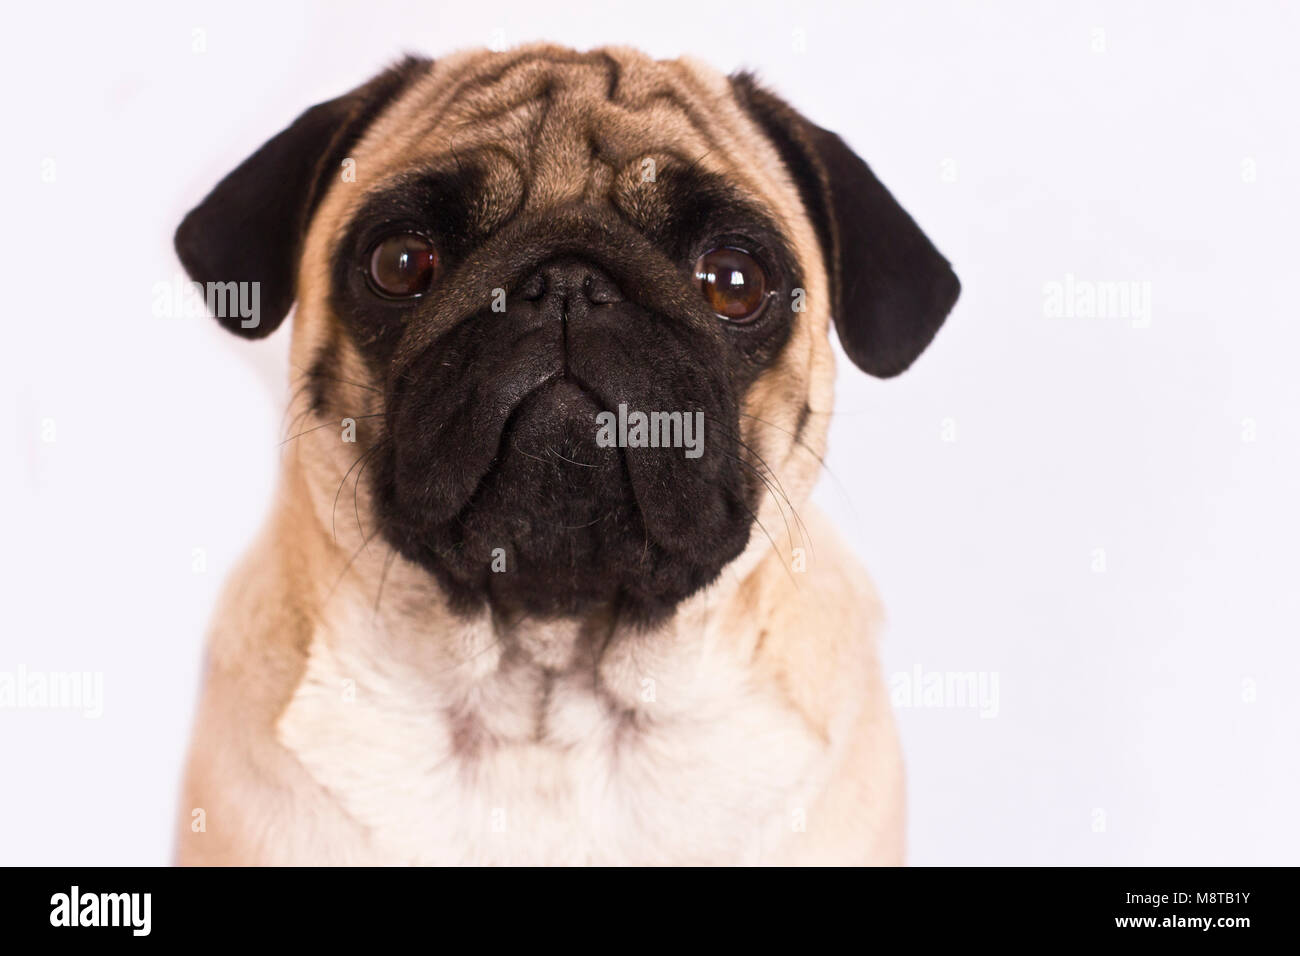 Der Mops Hund sitzt und schaut direkt in die Kamera. Traurig, großen Augen. Stockfoto